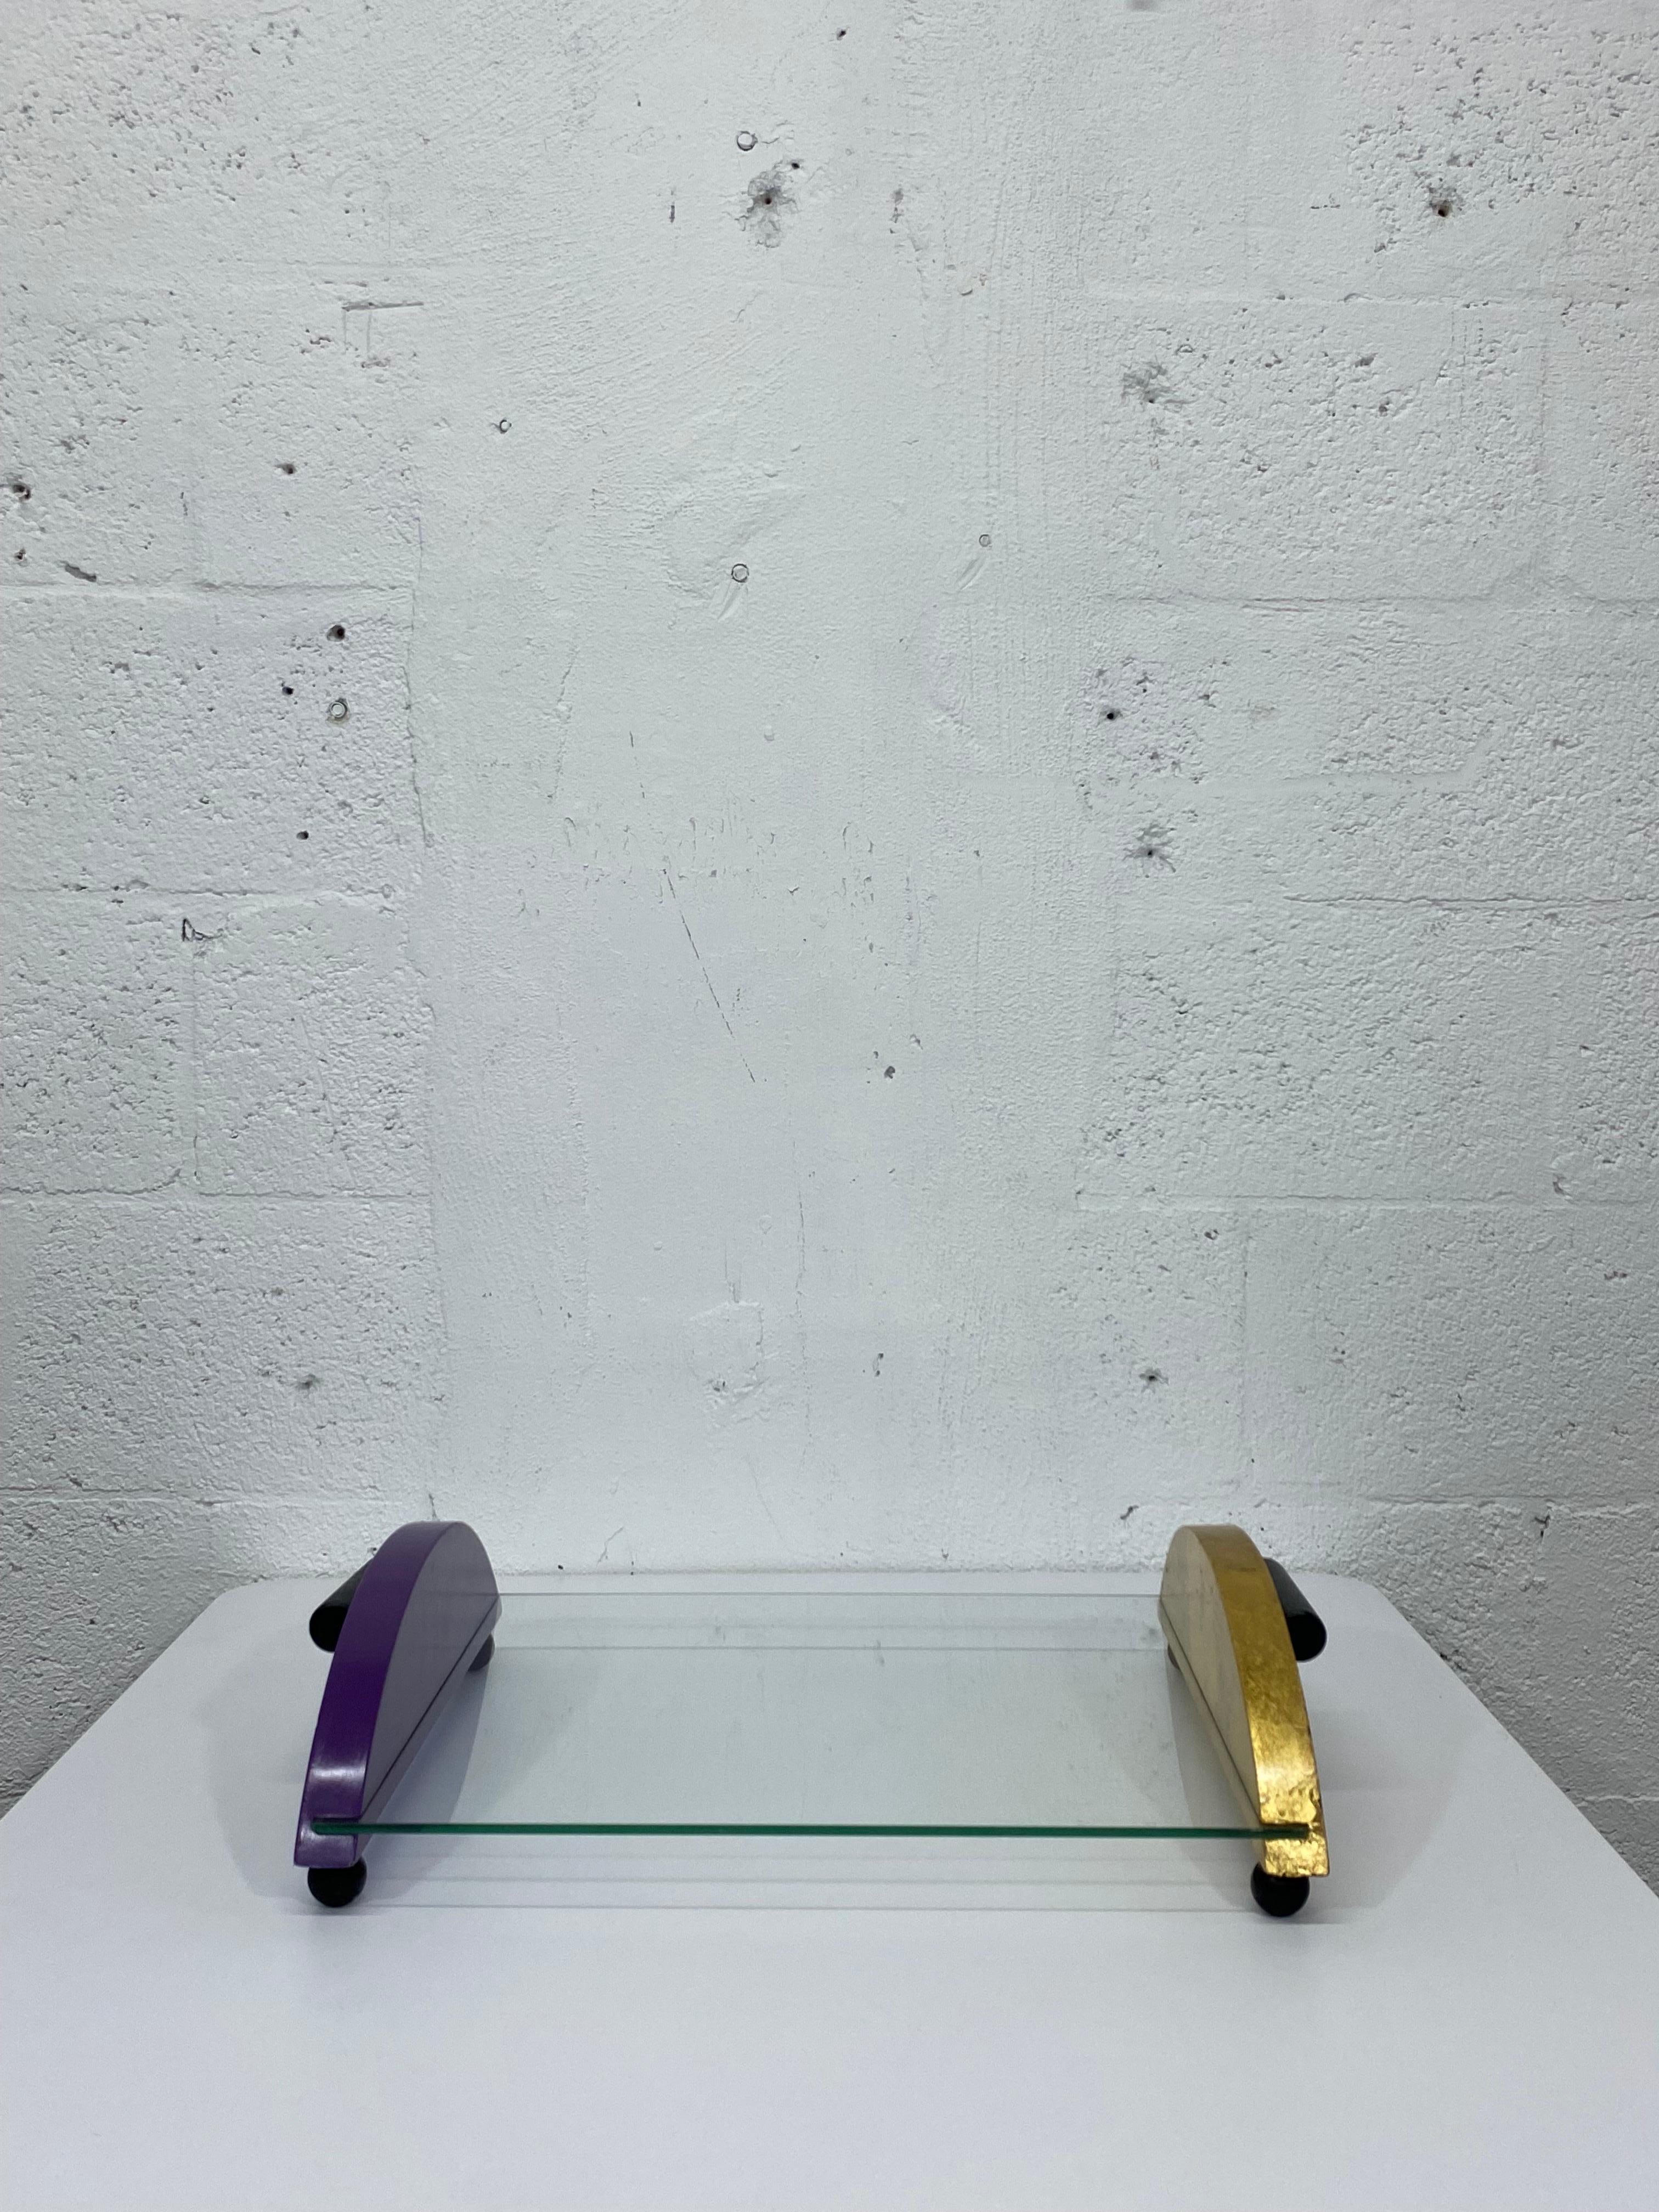 Plateau de service en verre et bois de conception postmoderne avec poignées par Thor, 1996. Un côté est en feuille d'or et l'autre en violet.